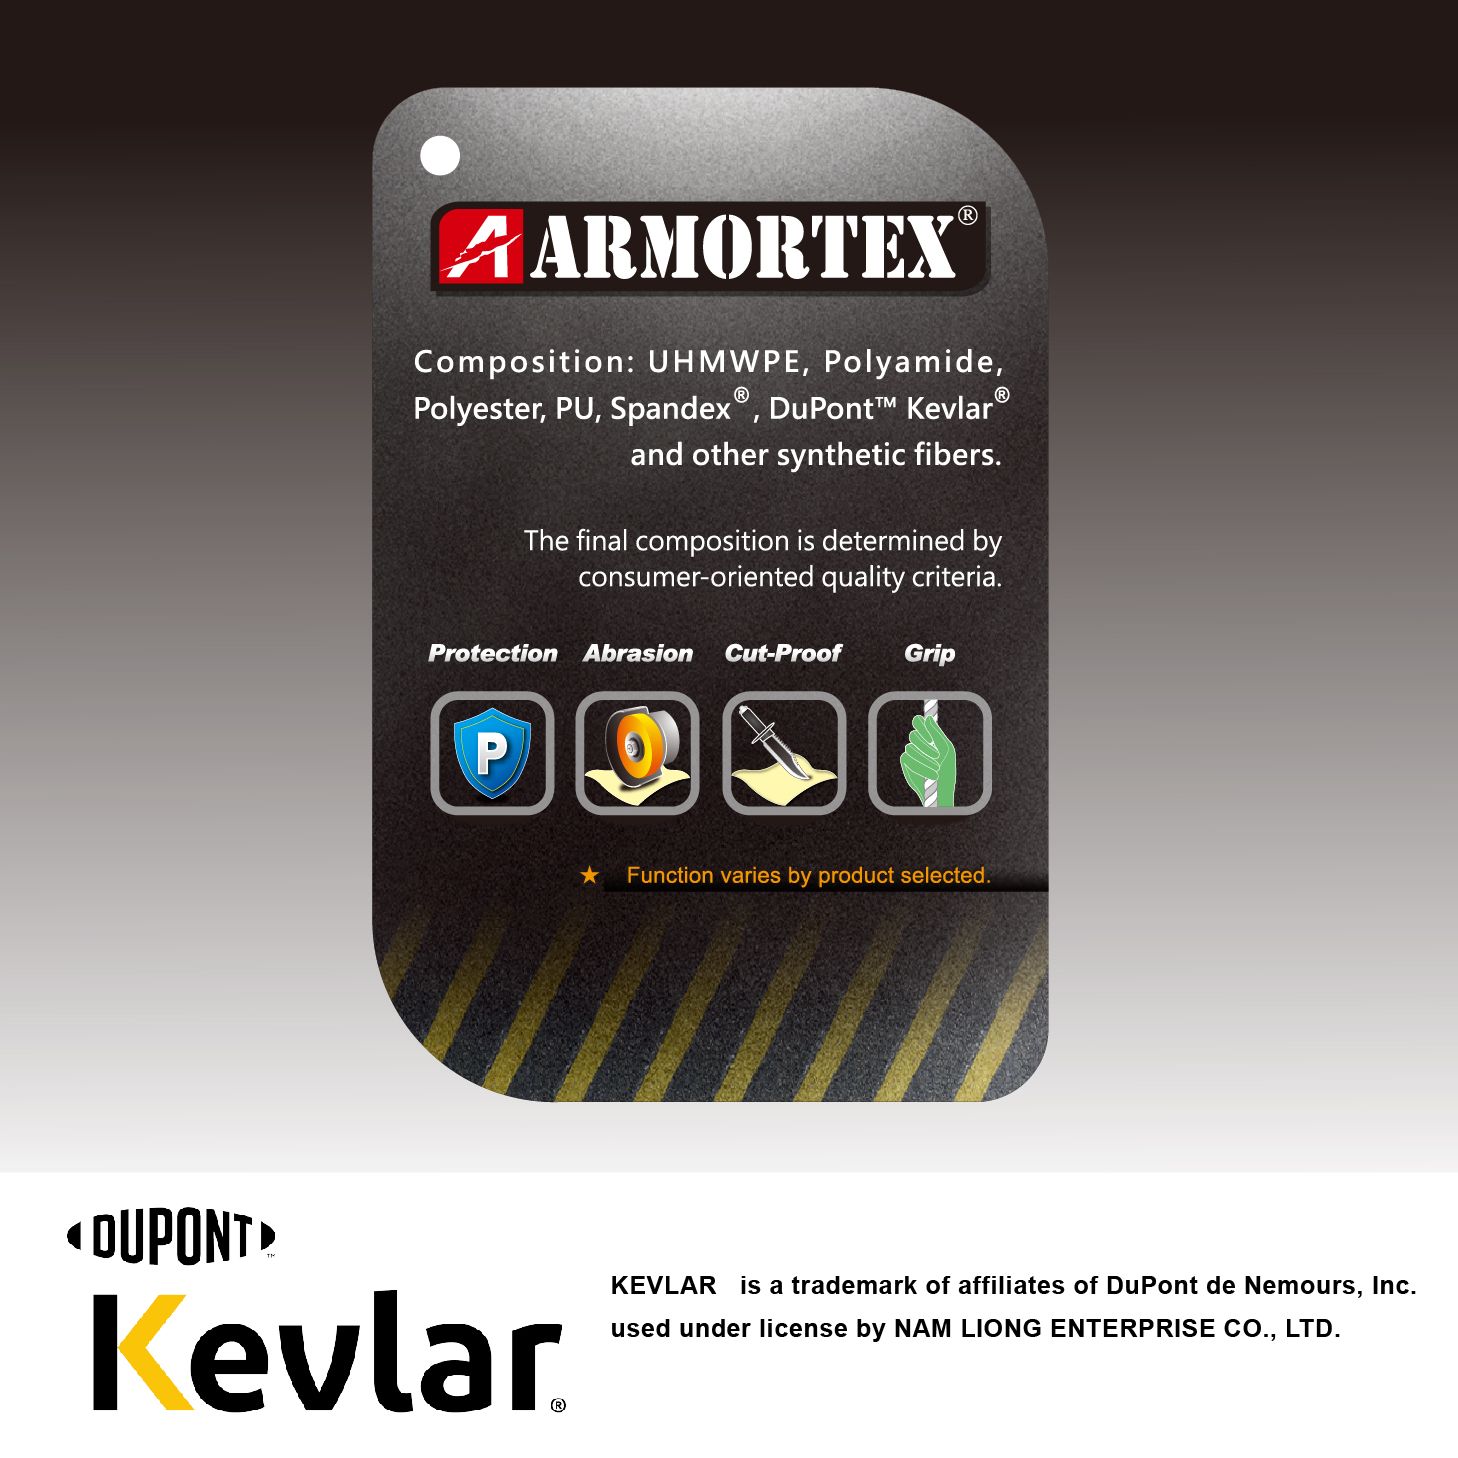 南良國際提供的ARMORTEX®商标，我要满足那些条件才能在产品上使用呢?